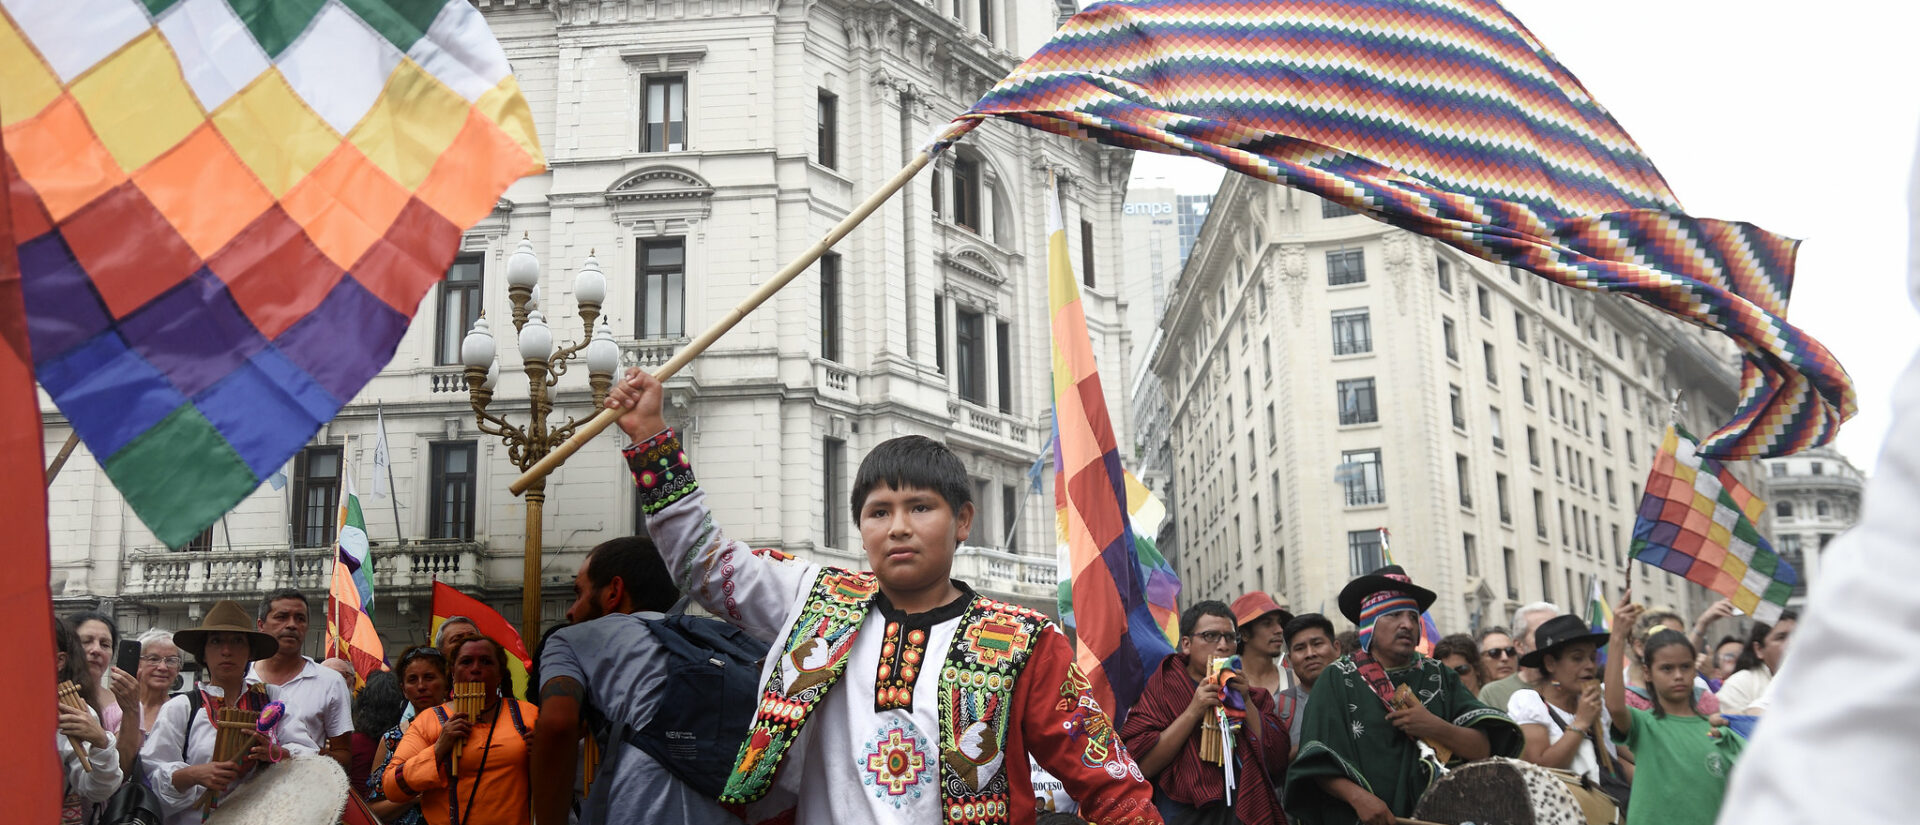 Des manifestations contre le pouvoir transitoire en Bolivie ont éclaté dans les grandes villes | © Santiago Sito/Flickr/CC BY-NC-ND 2.0